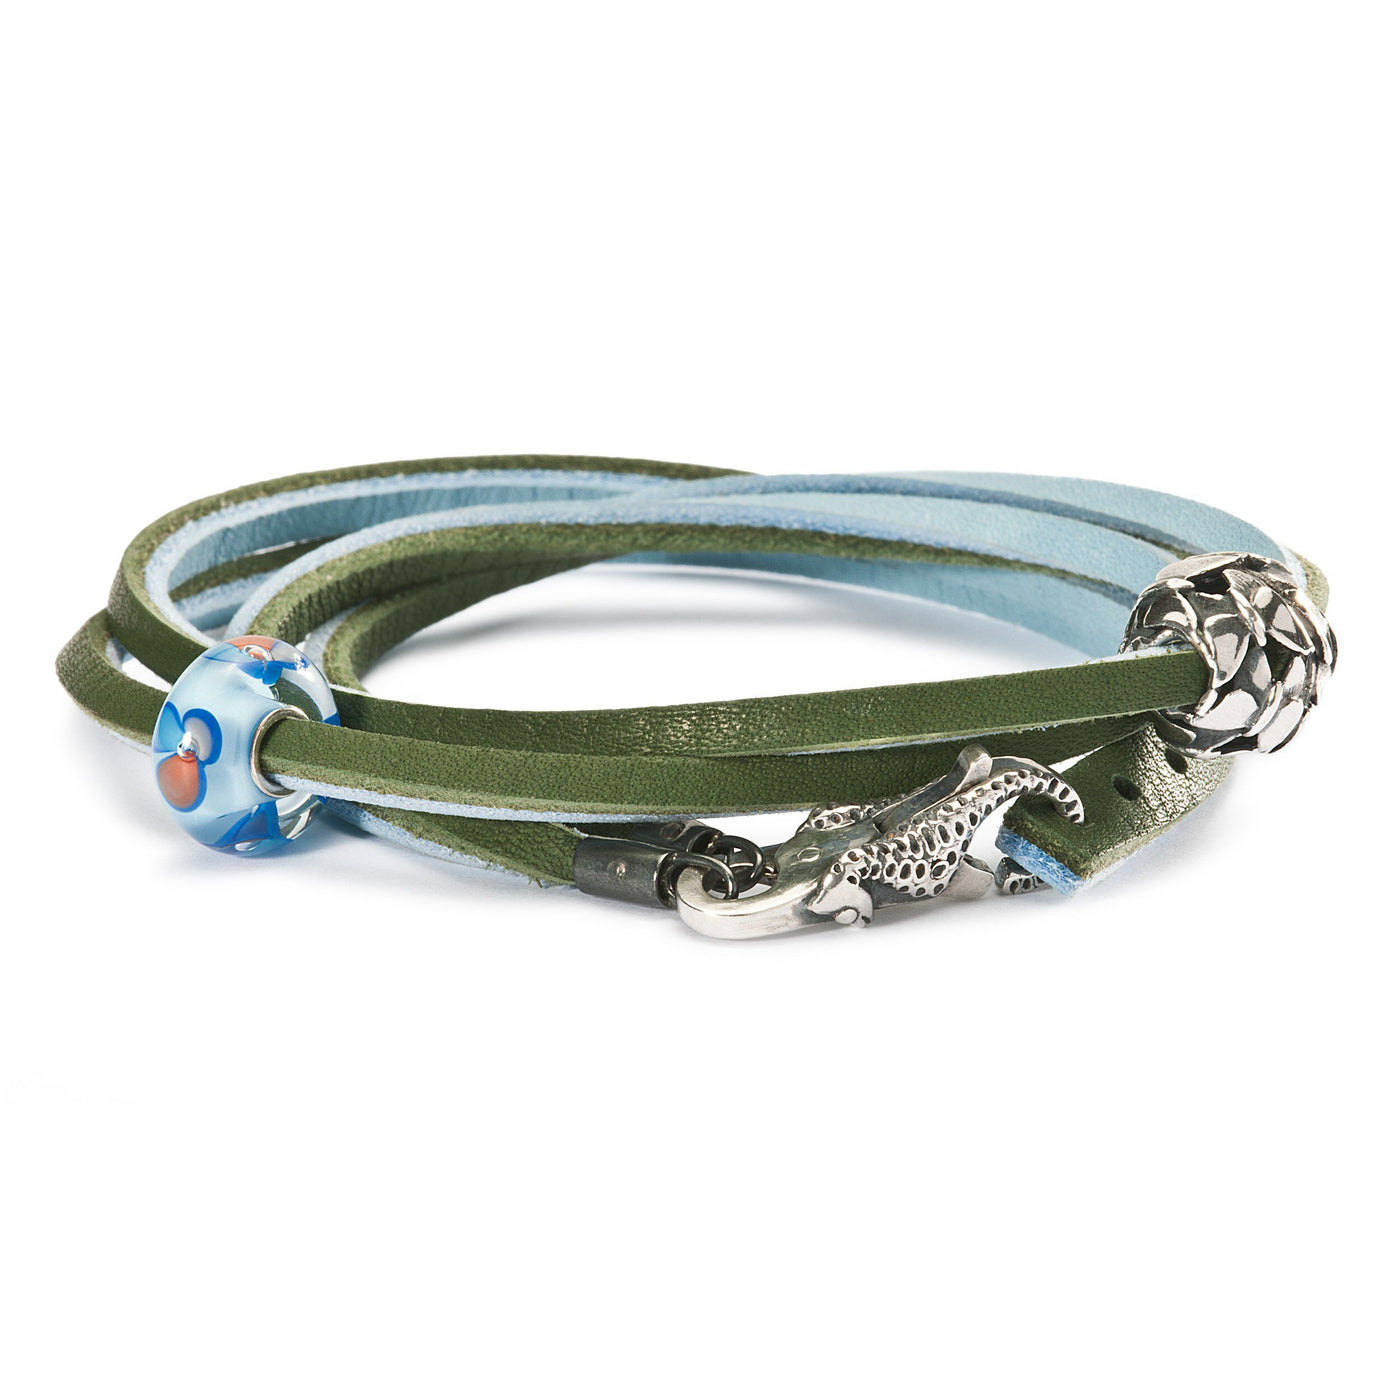 Leather Bracelet Light Blue/Green - Trollbeads Canada